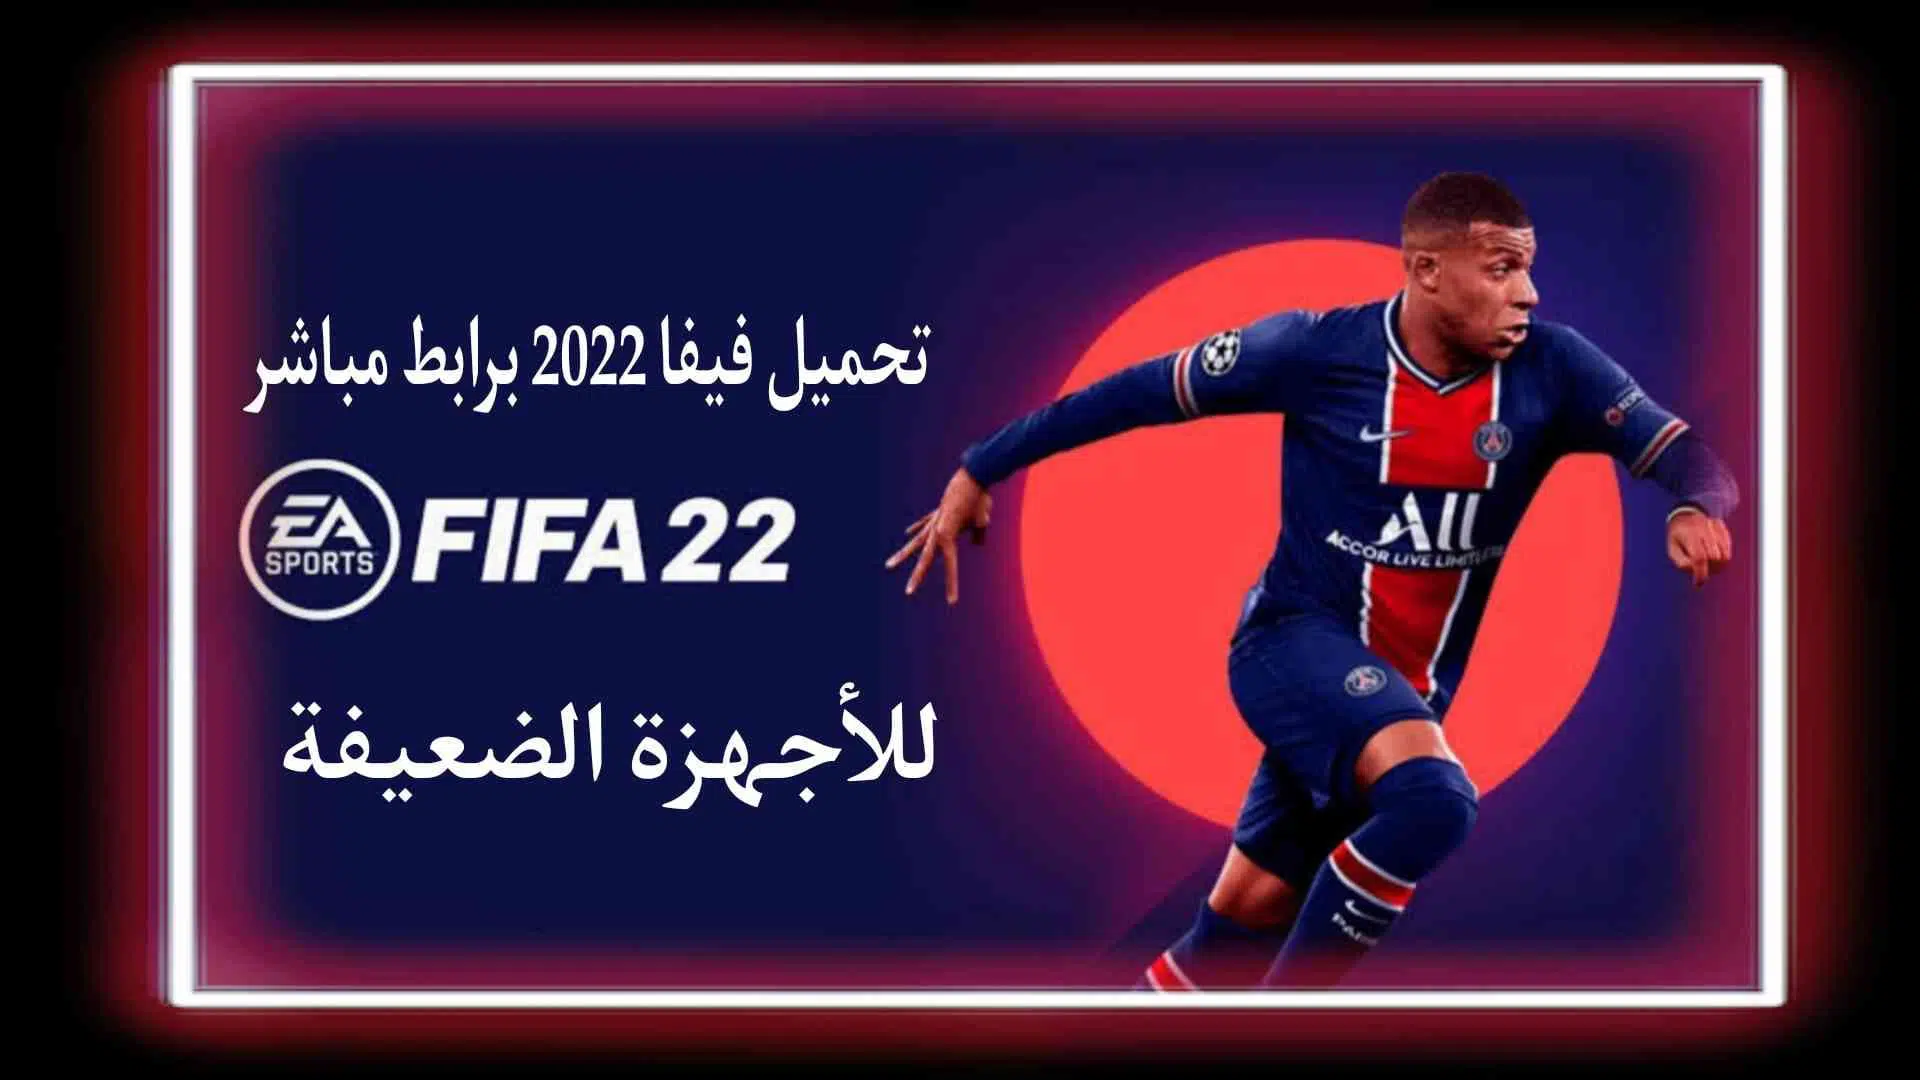 تحميل لعبة فيفا 2022 FIFA 22 للاجهزة الضعيفة مجانا